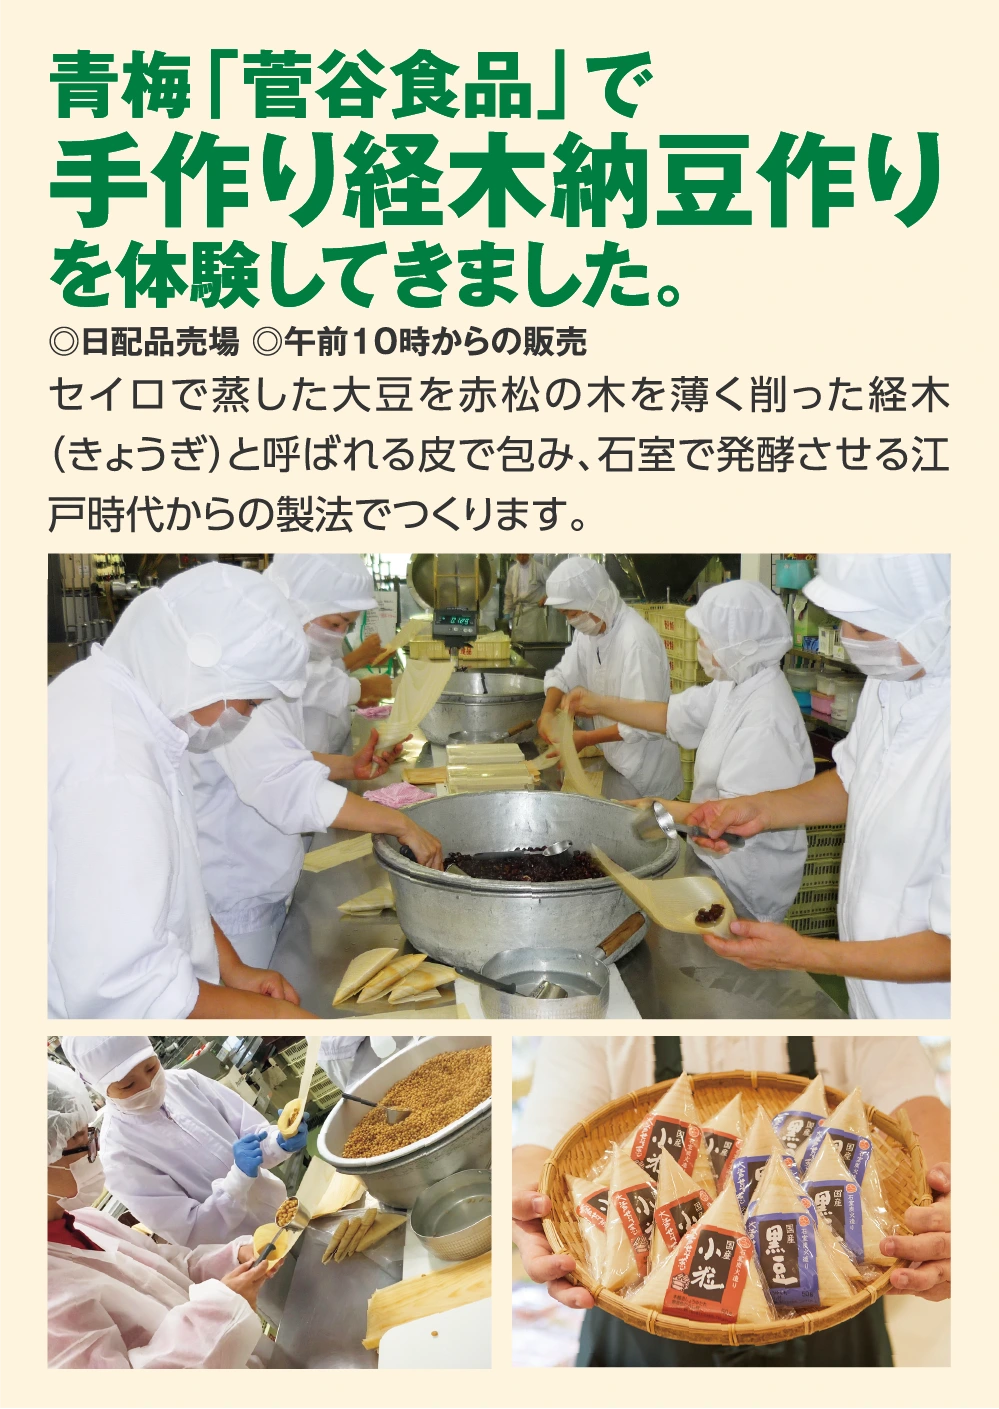 青梅「菅谷食品」で
					手作り経木納豆作り
					を体験してきました。
					